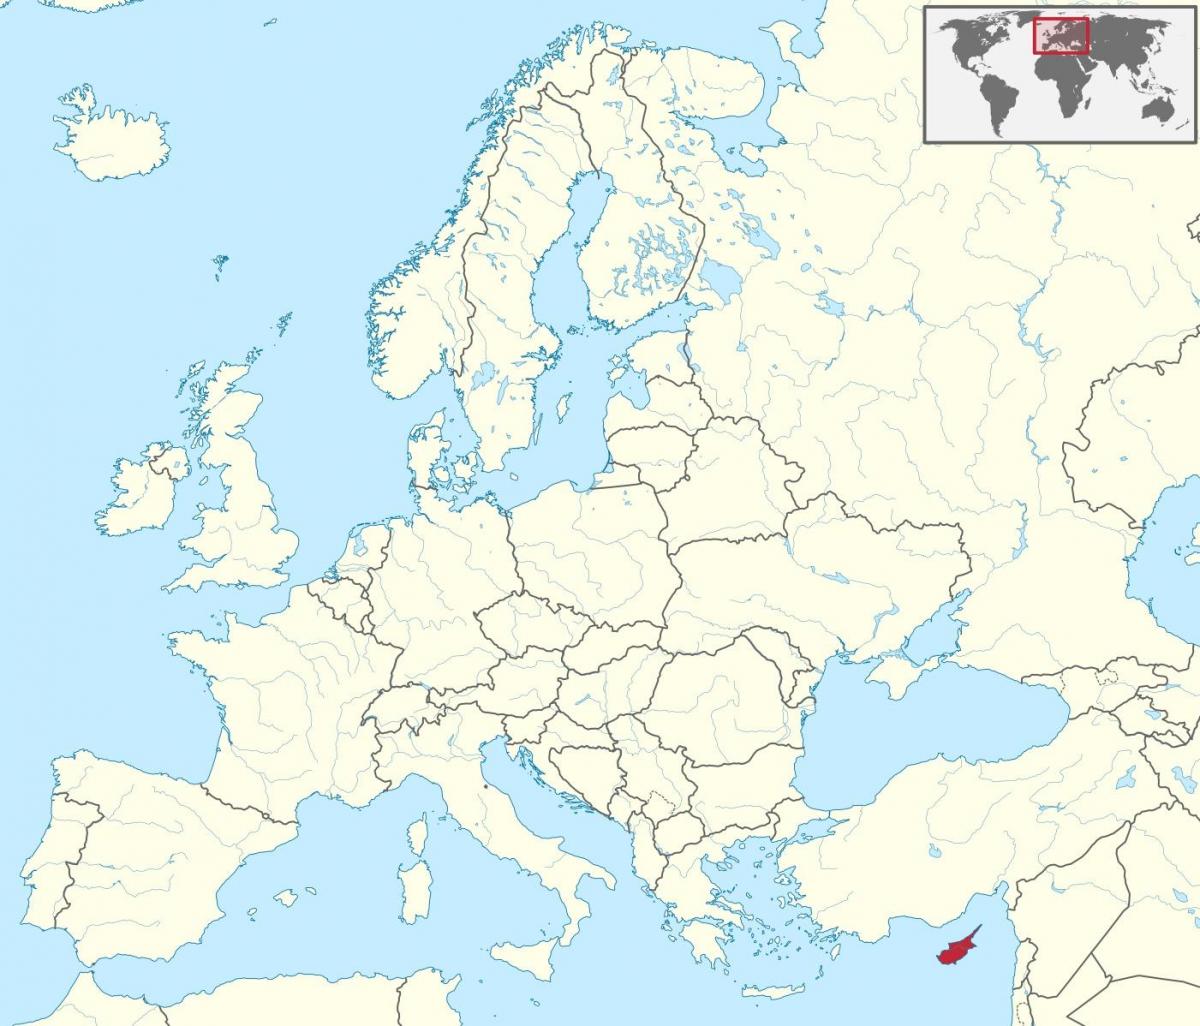 მსოფლიო რუკა გვიჩვენებს, კვიპროსი